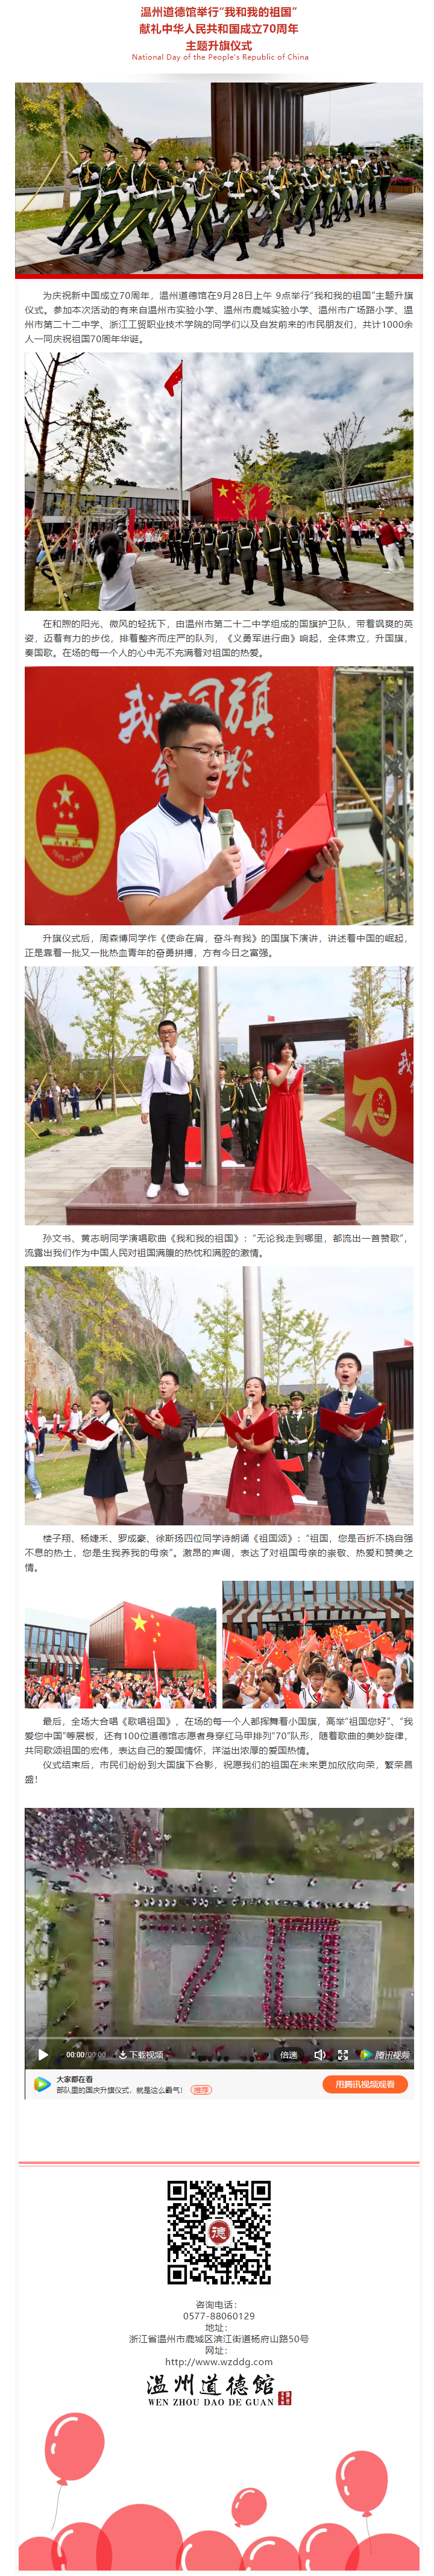 温州道德馆献礼中华人民共和国成立70周年主题升旗仪式.png